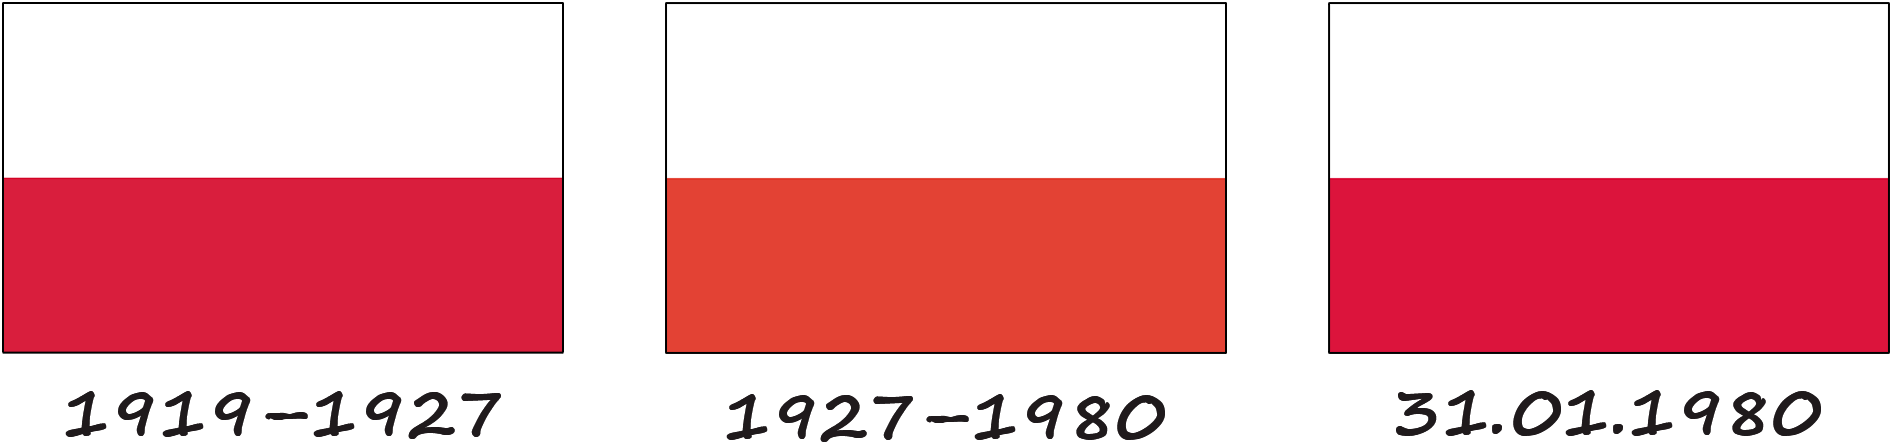 Histoire du drapeau polonais